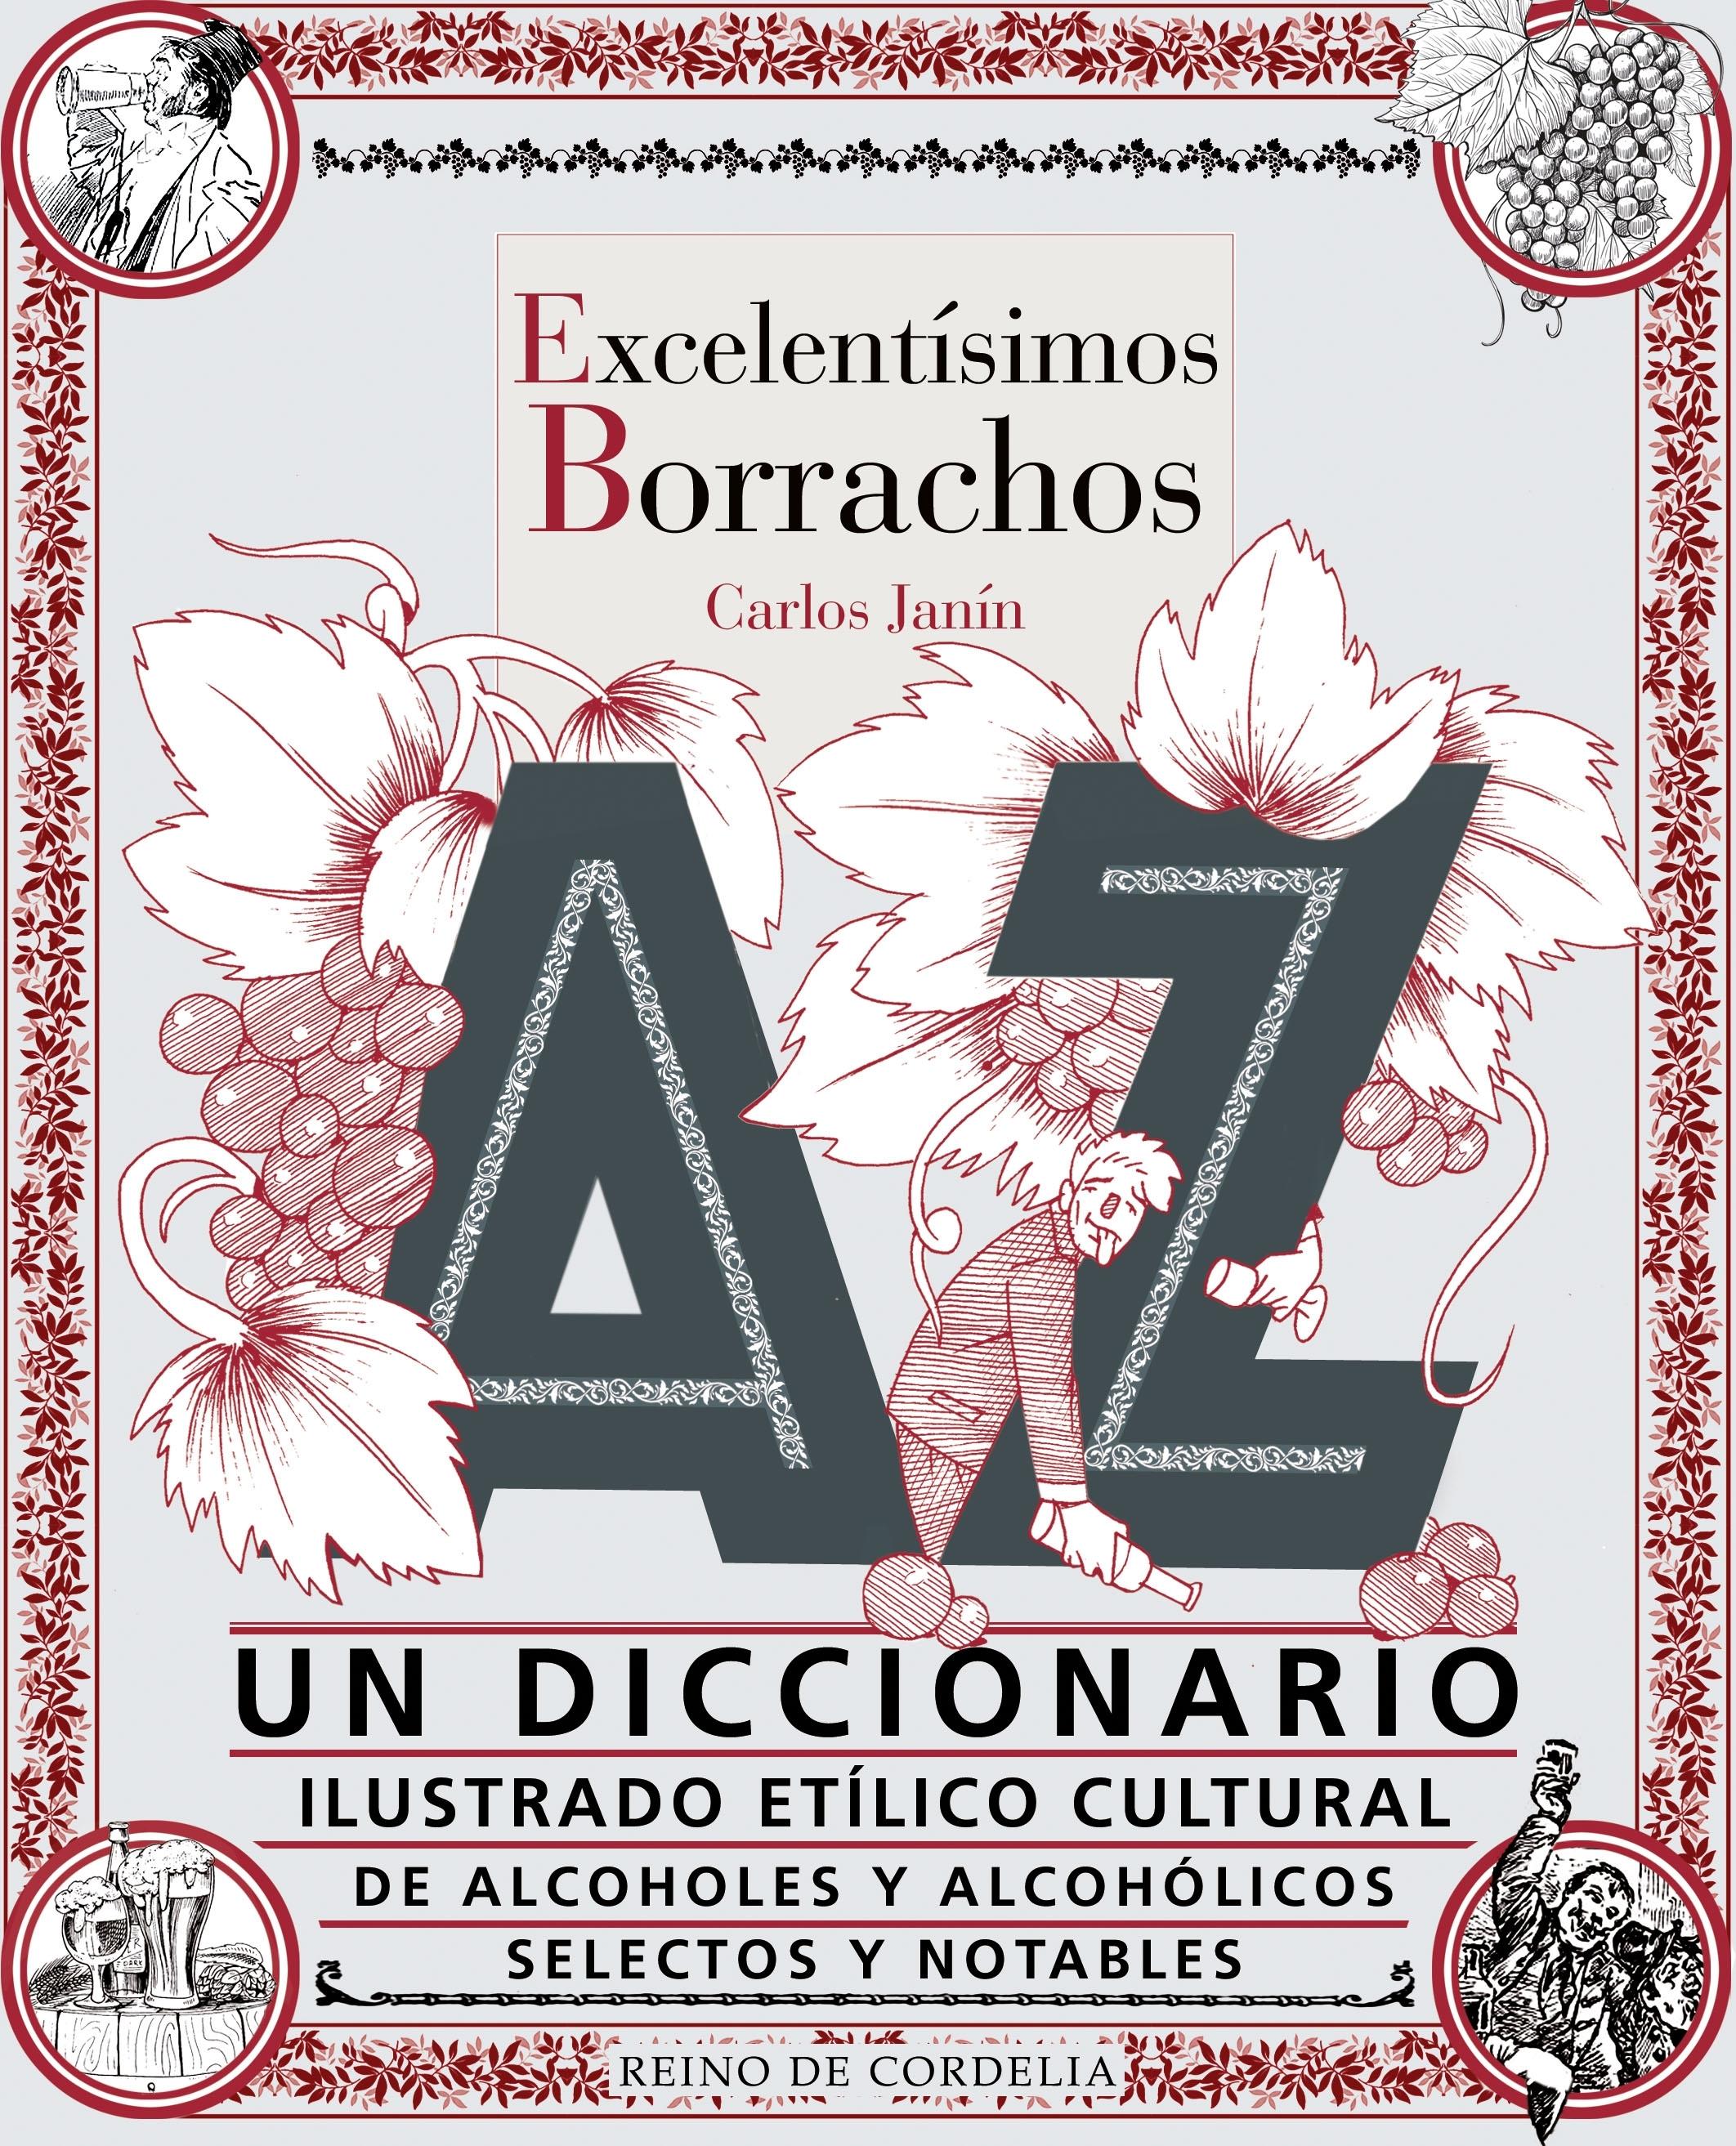 Excelentísimos Borrachos "Un Diccionario Etílico Cultural de Alcoholes y Alcohólicos S". 